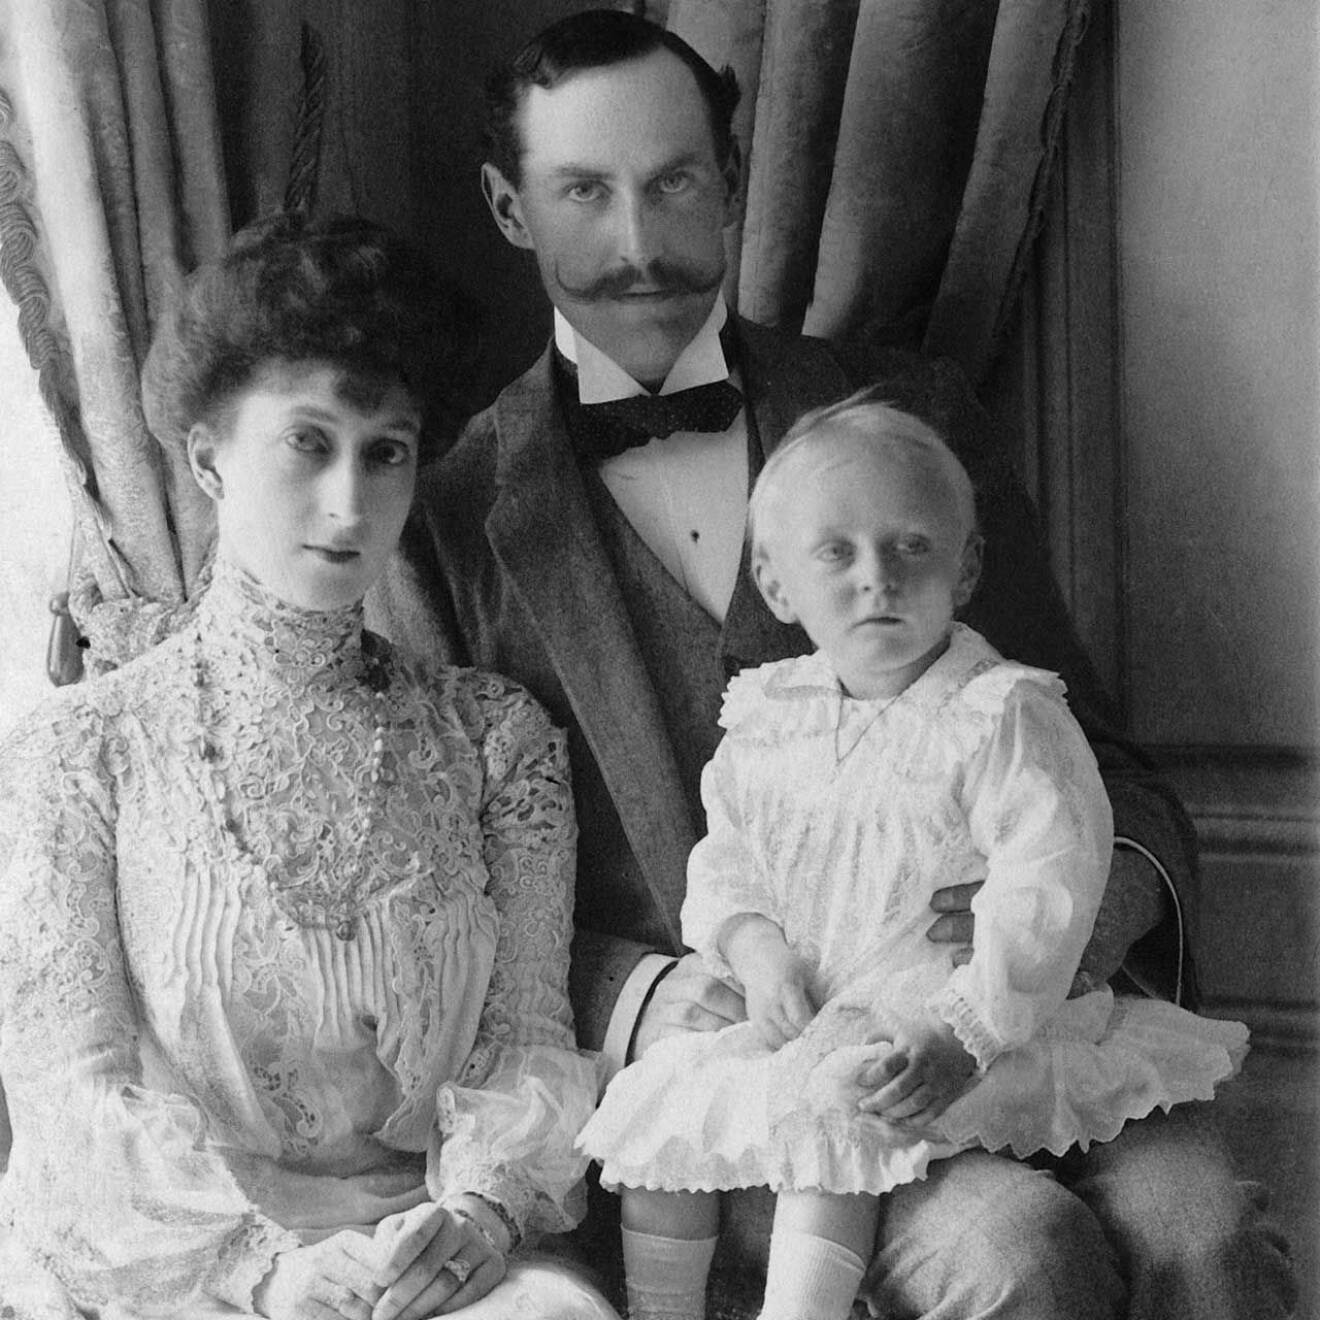 Kung Olav av Norge som liten prins tillsammans med sin brittiska mamma Maud och sin norske pappa kung Haakon.